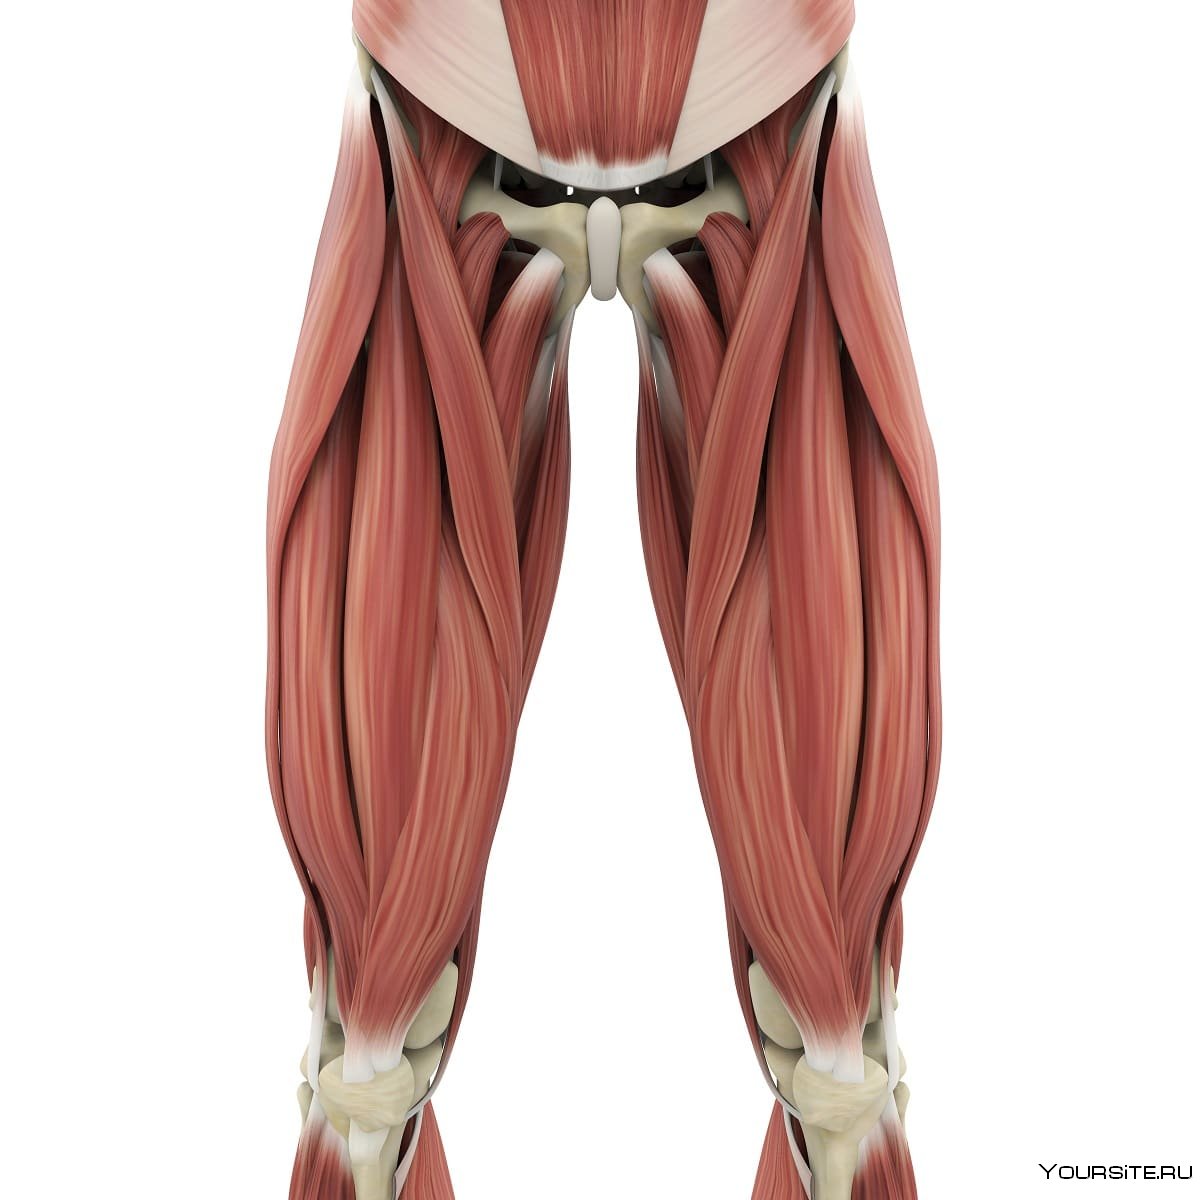 Портняжная мышца бедра анатомия